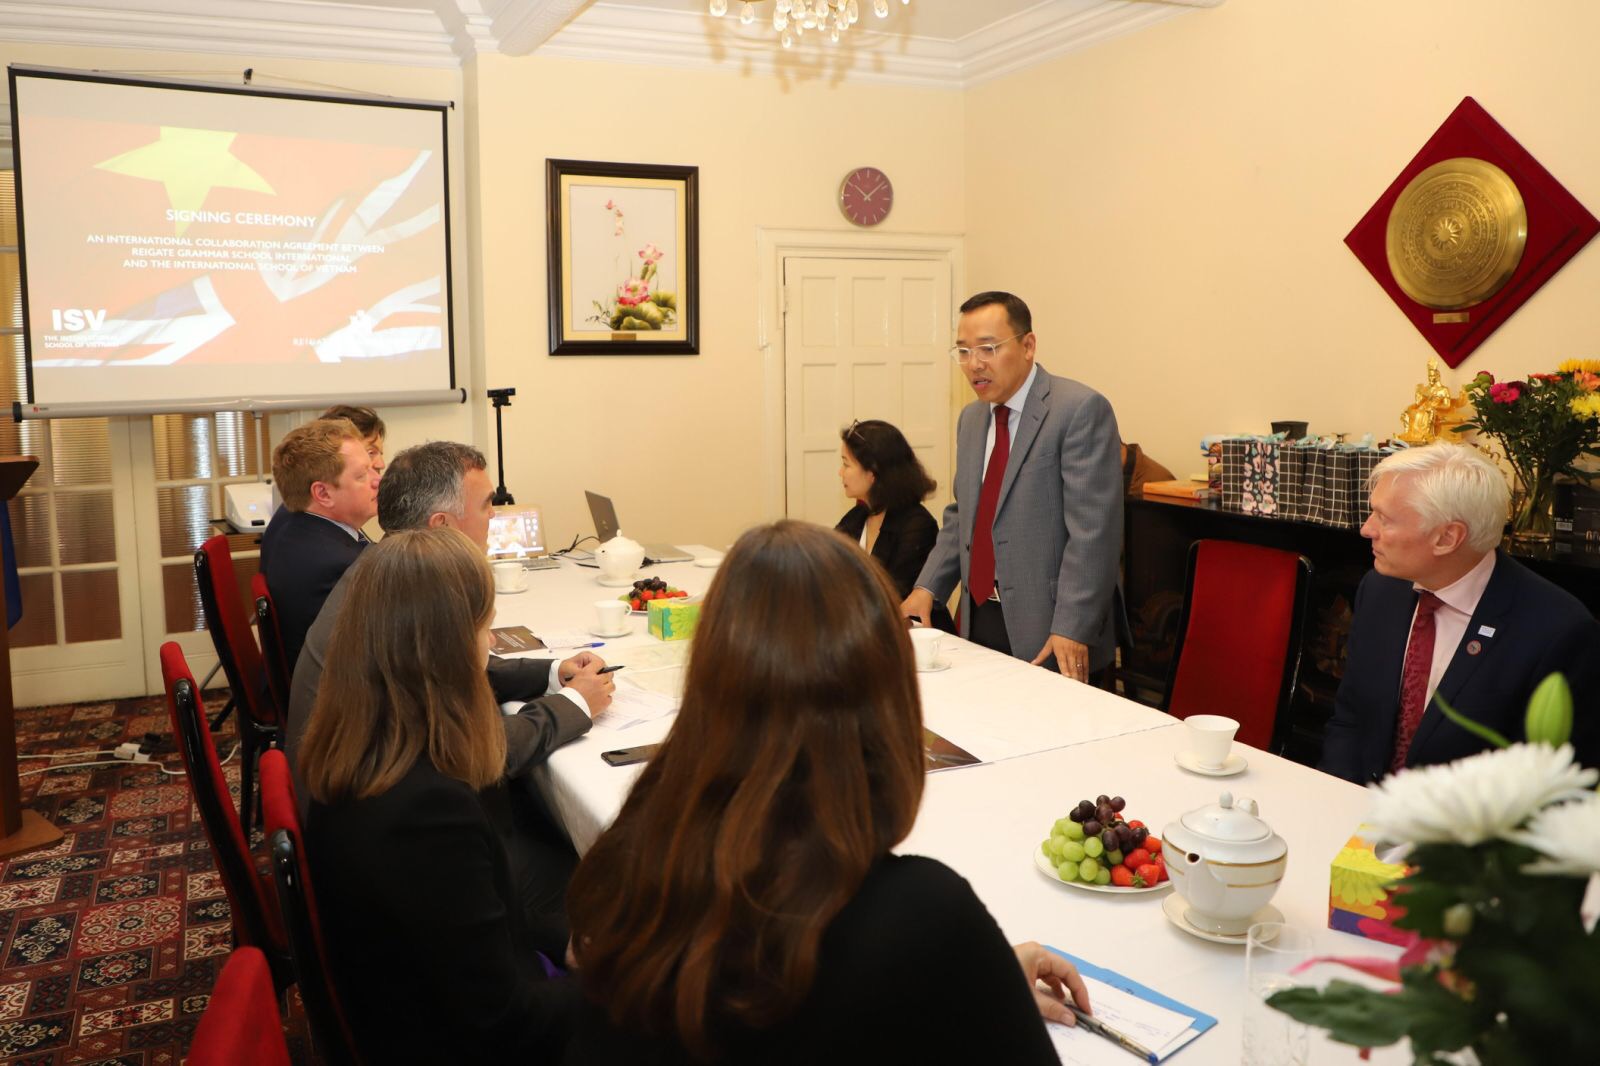 Trường Quốc tế Việt Nam kí hợp tác với trường Reigate Grammar School của Anh - Hướng nghiệp GPO